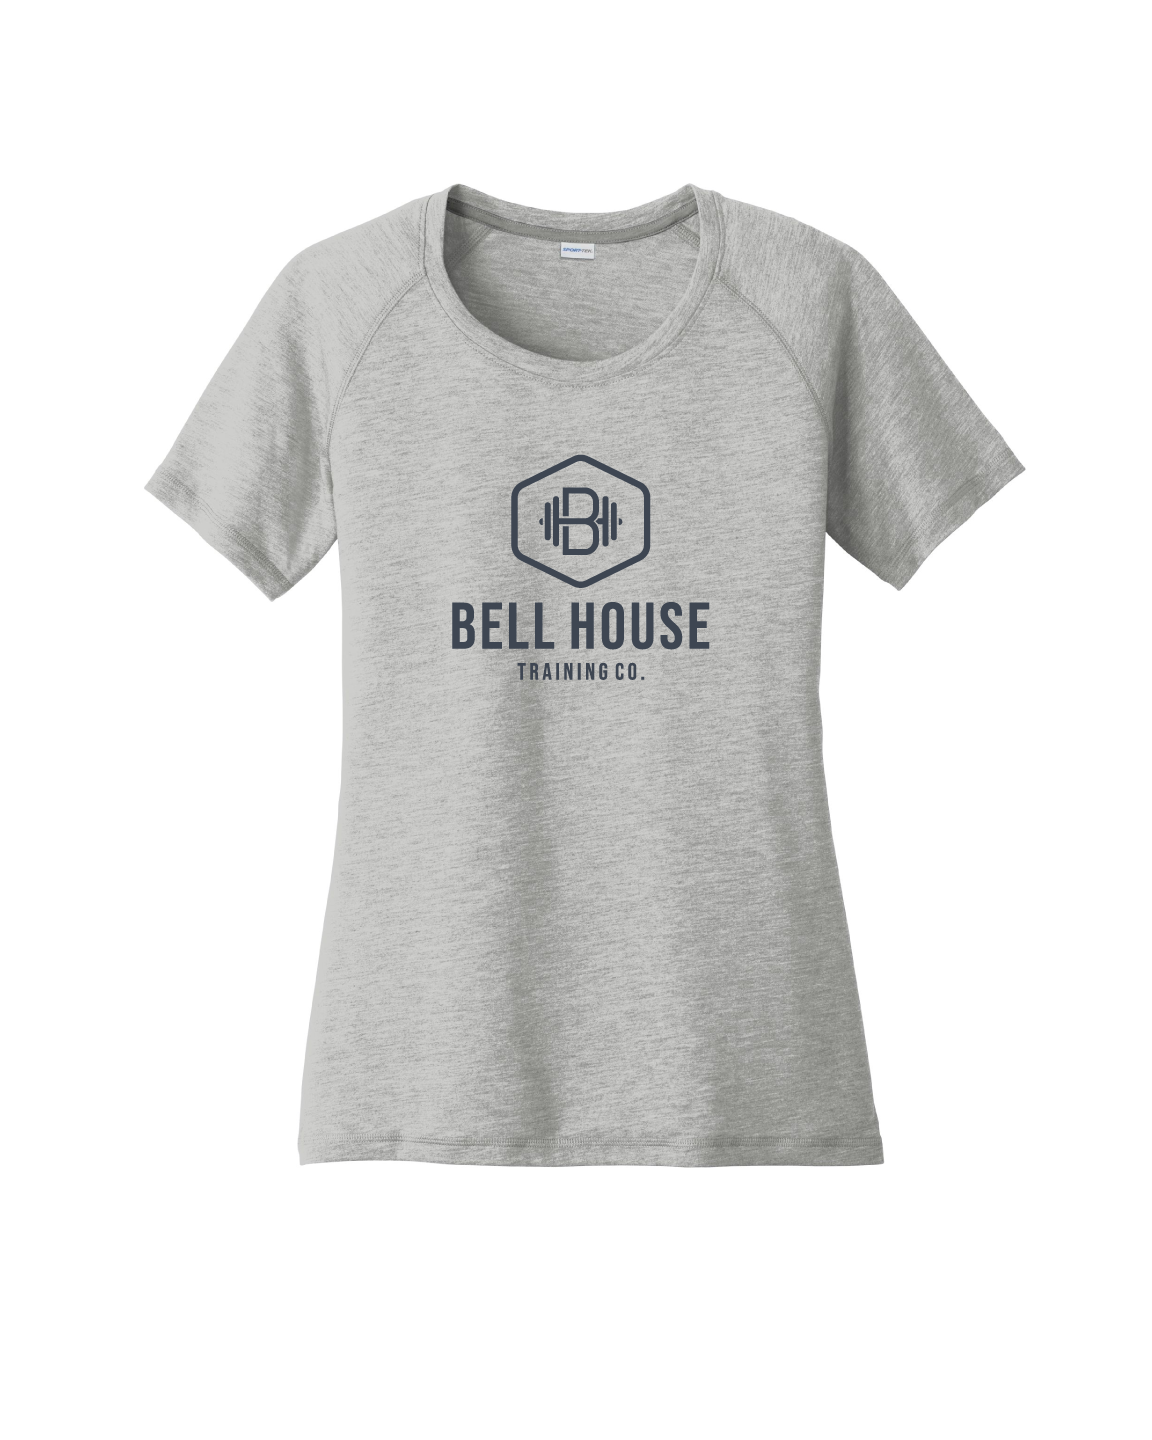 Bell House - Women's Moisture Wicking T-Shirt